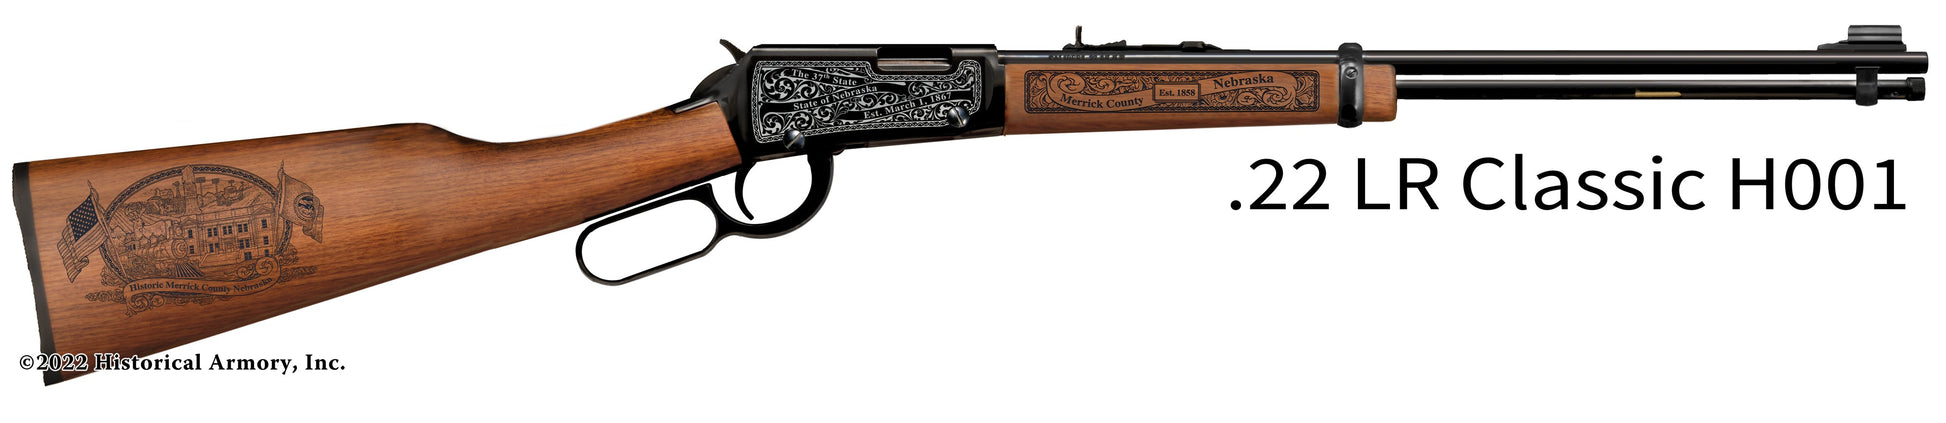 Merrick County Nebraska Engraved Henry H001 Rifle